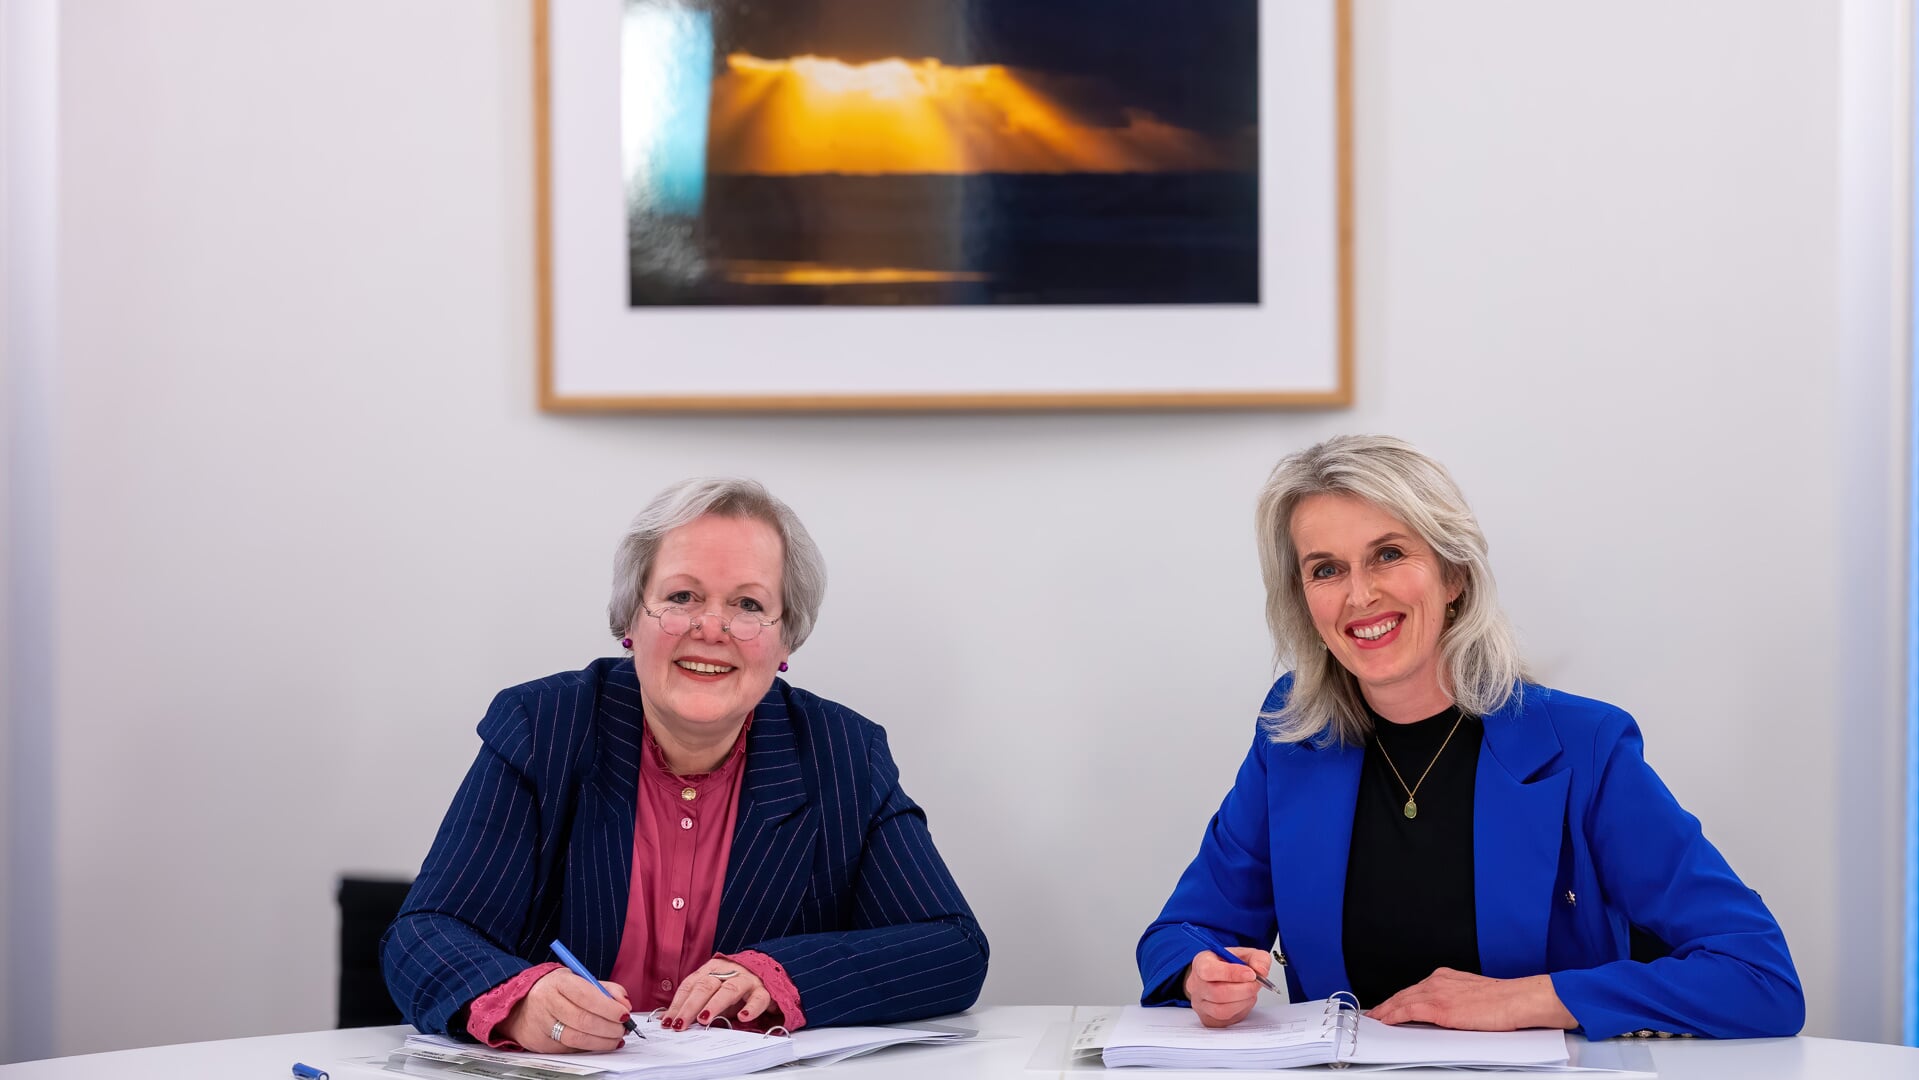 Burgemeester Karen Heerschop (l) en Nienke Hopman van de Biesterbos Groep zetten hun handtekening onder de overeenkomst. 